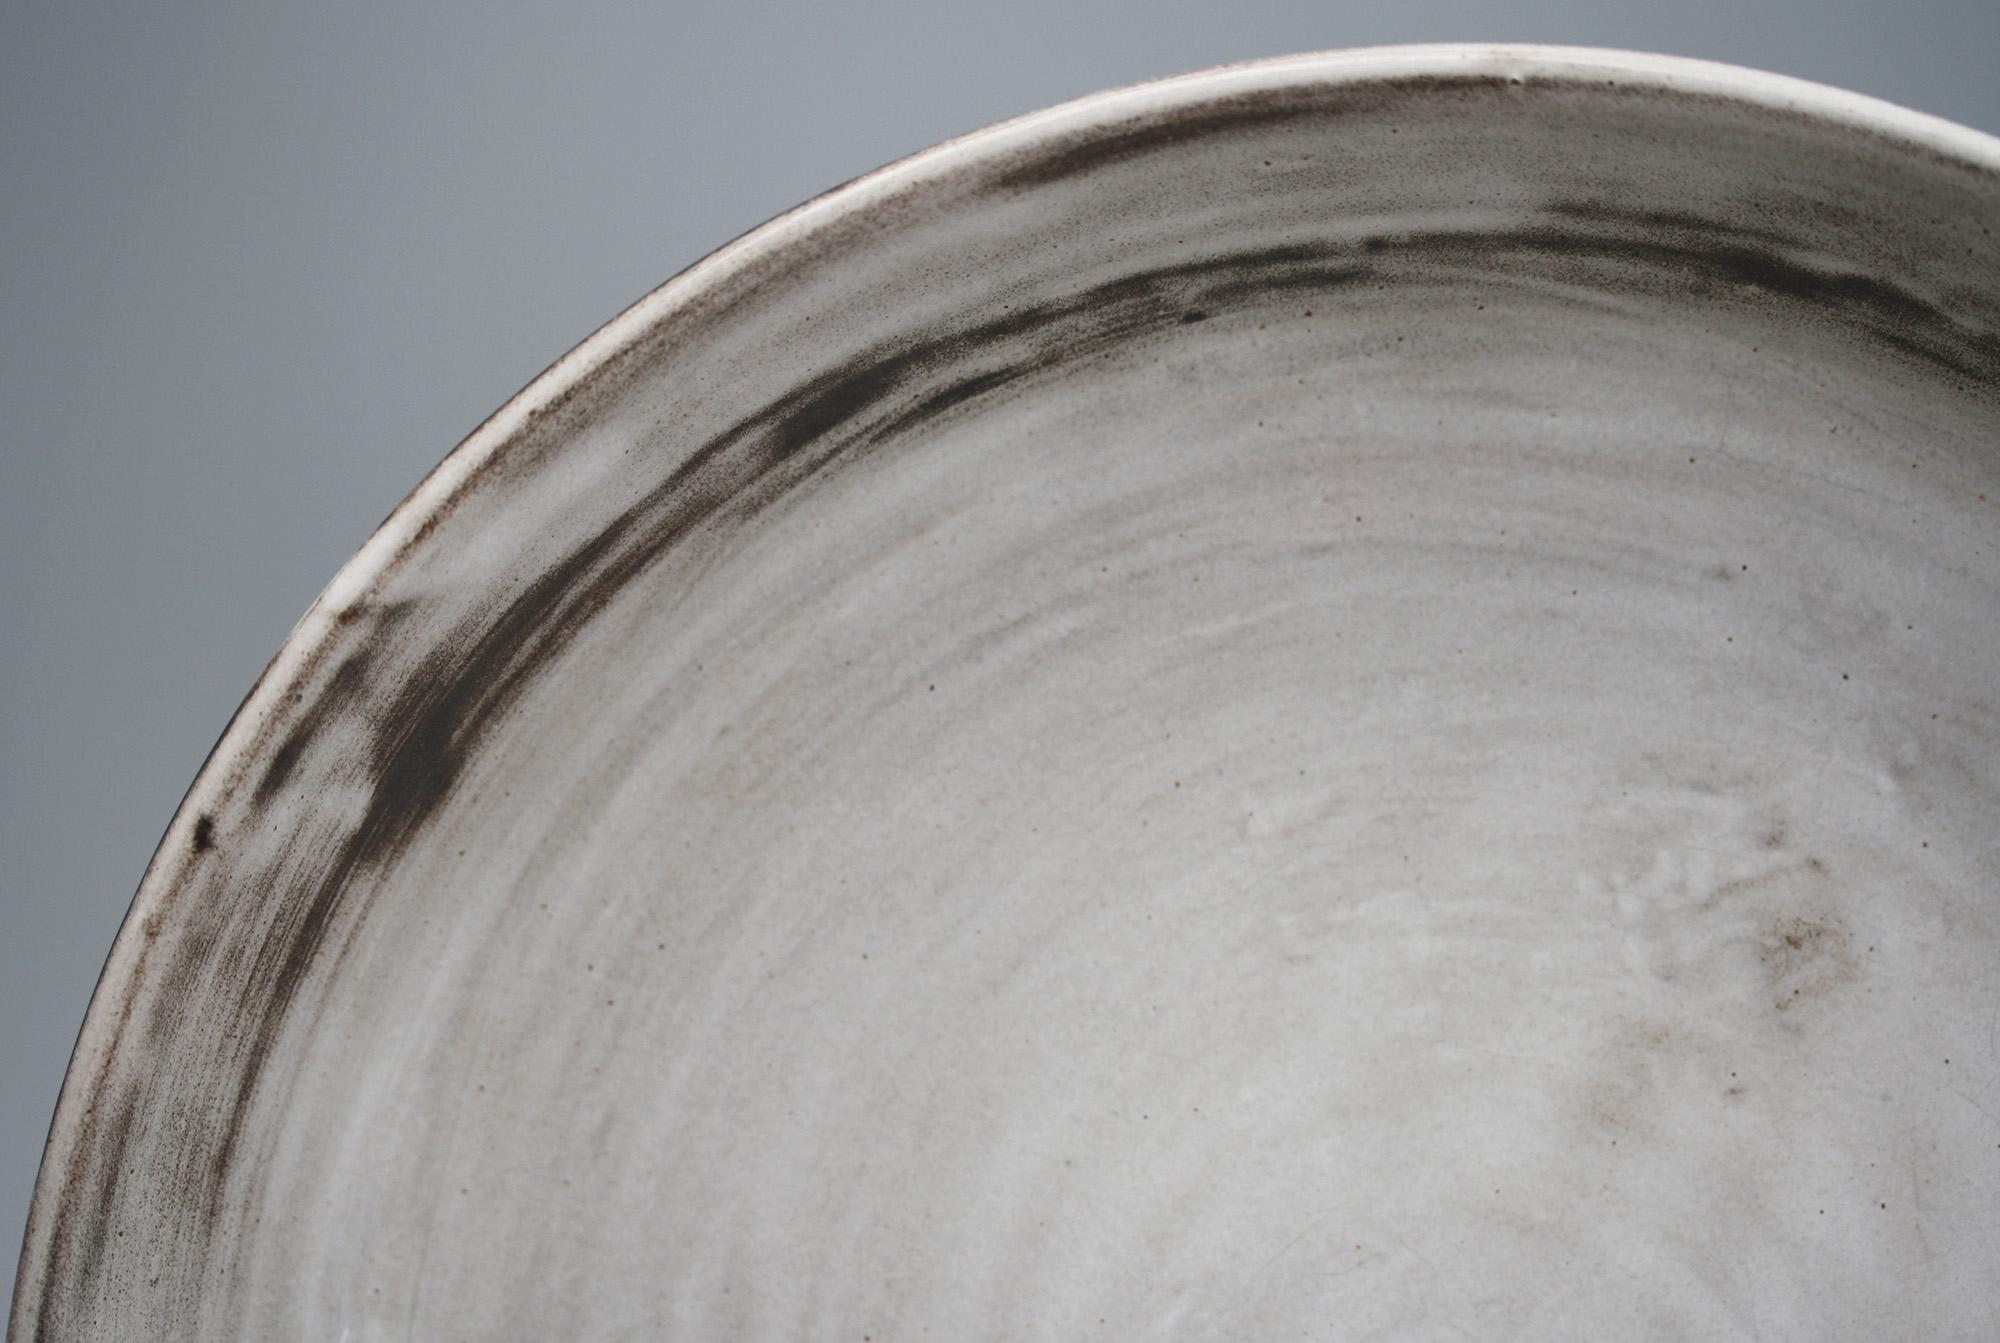 Un beau grand bol vintage en poterie d'atelier peu profond décoré de glaçures à l'engobe gris et noir par Angete Hoy (2014-2000) datant, selon les dires, des années 1950. Le bol est fabriqué à partir d'une argile rouge et présente une forme large,